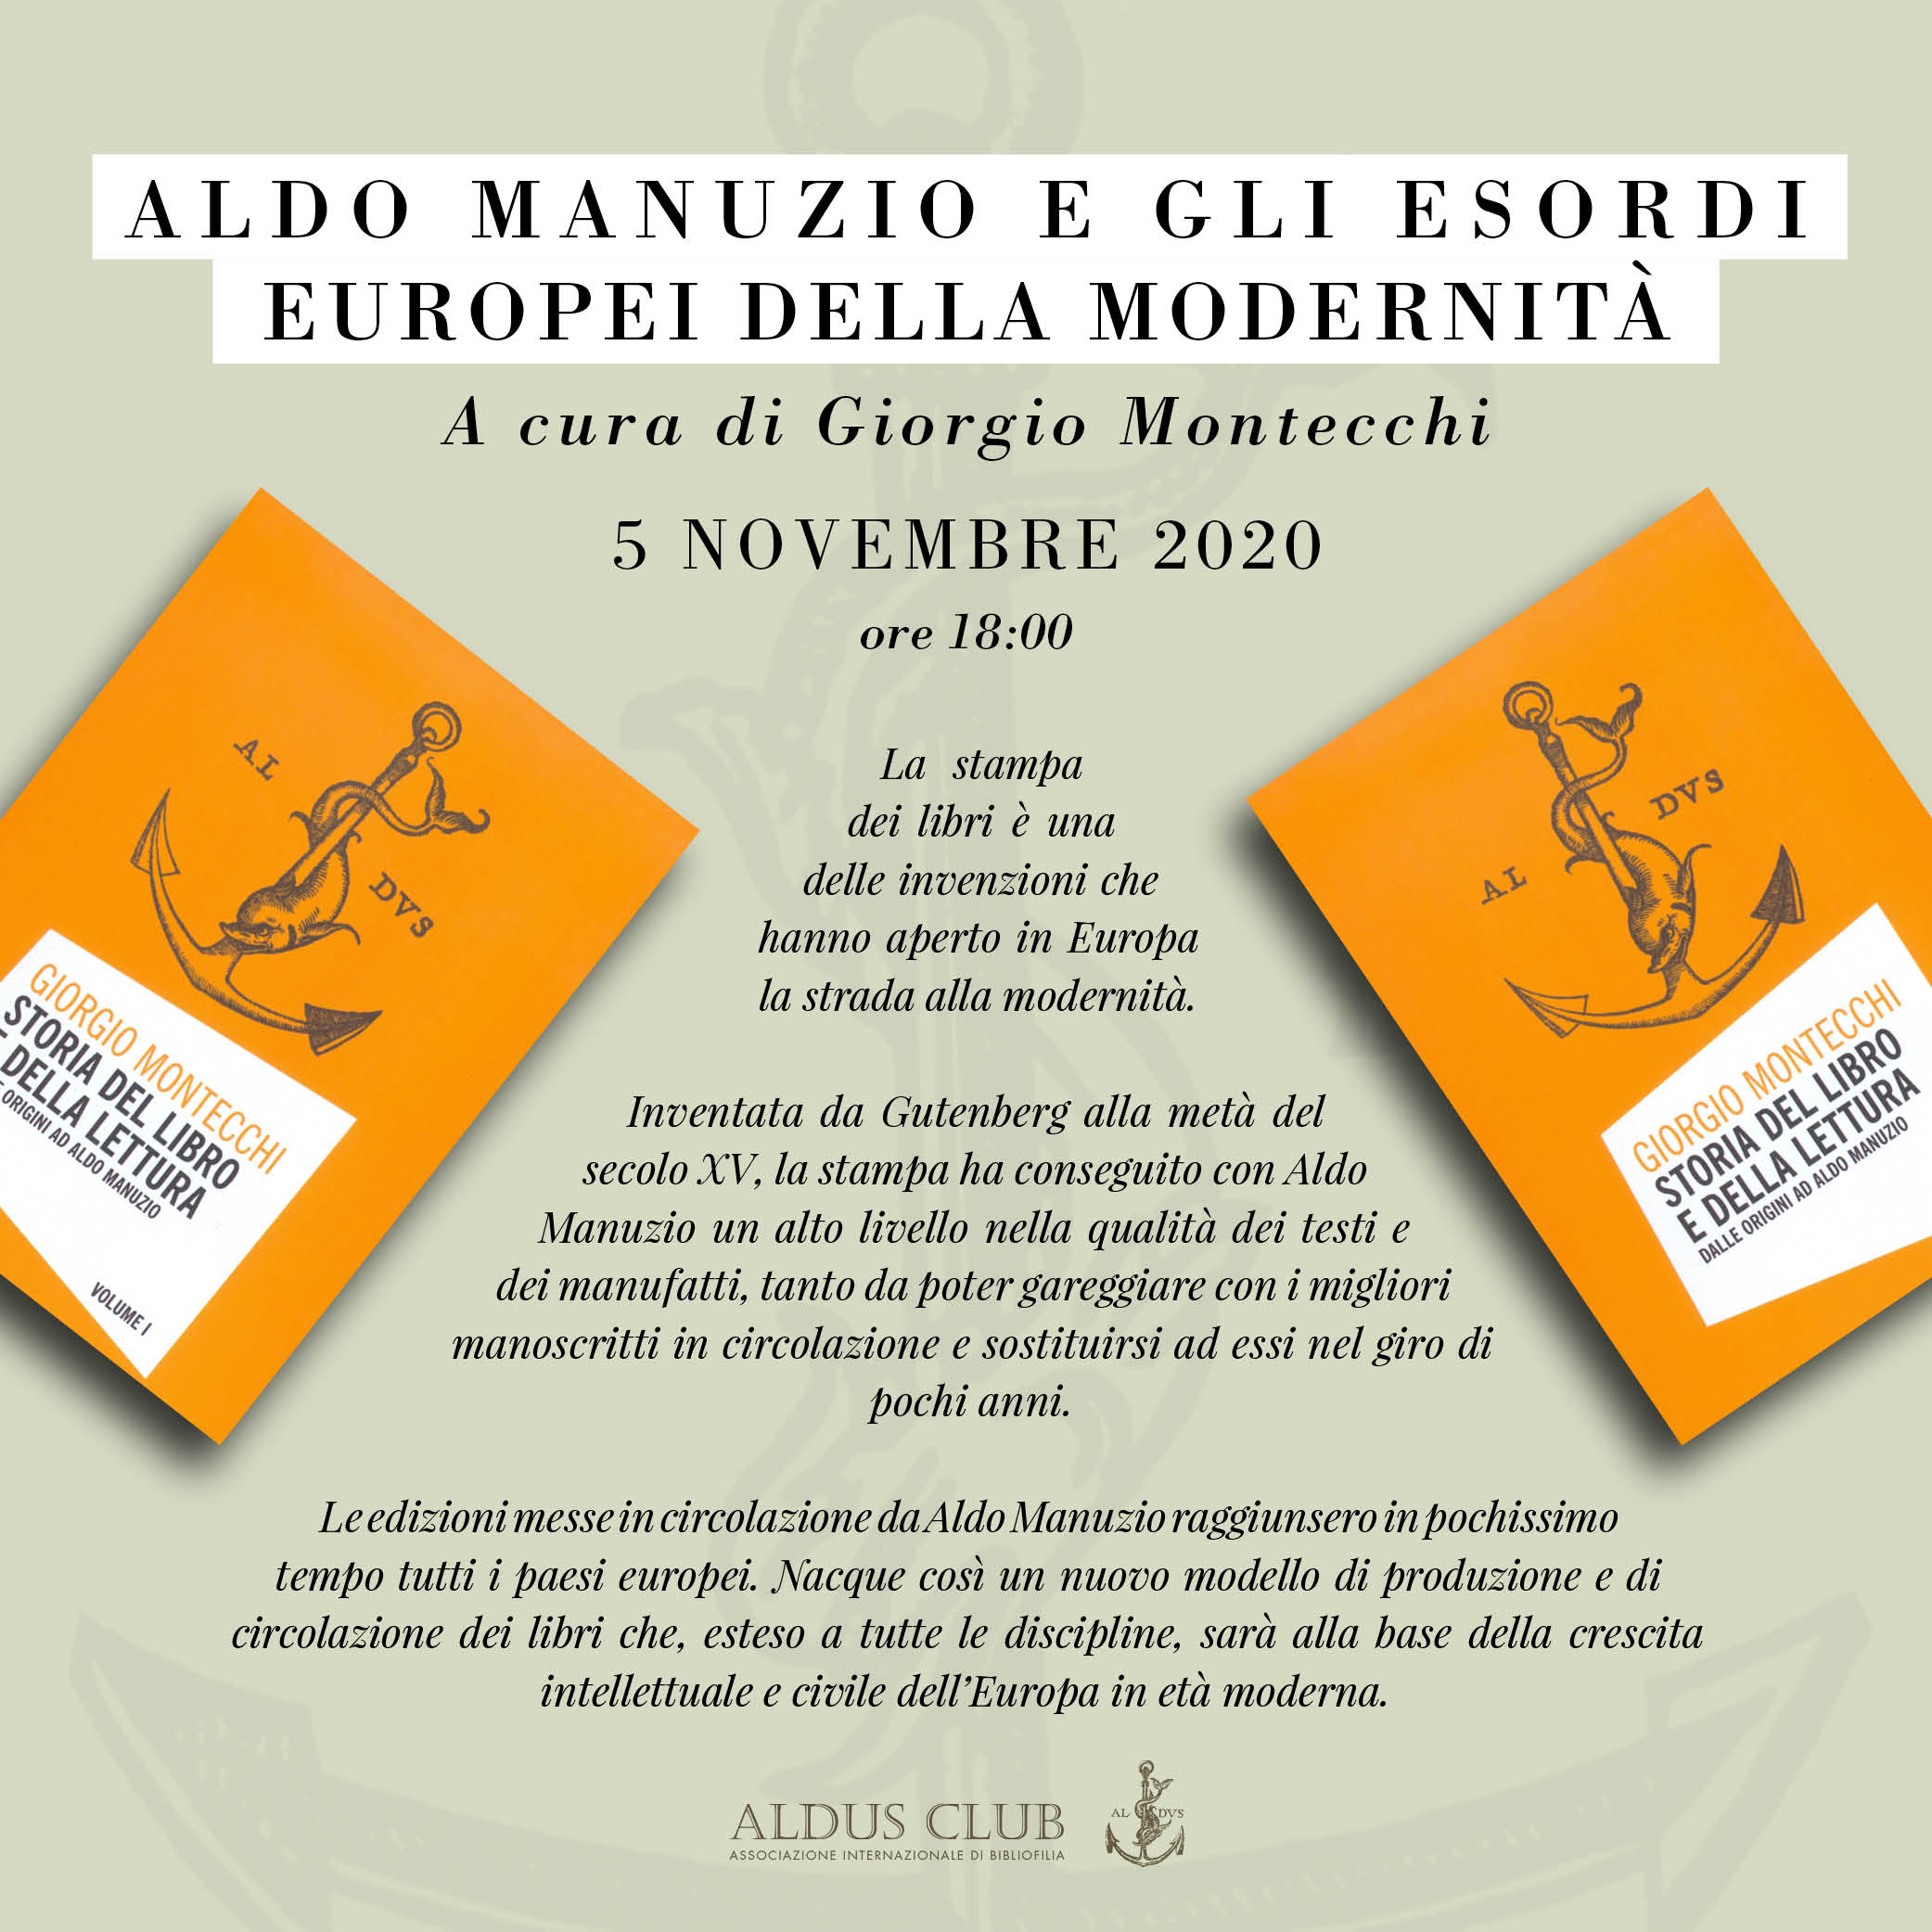 Aldo Manuzio e gli esordi europei della modernità